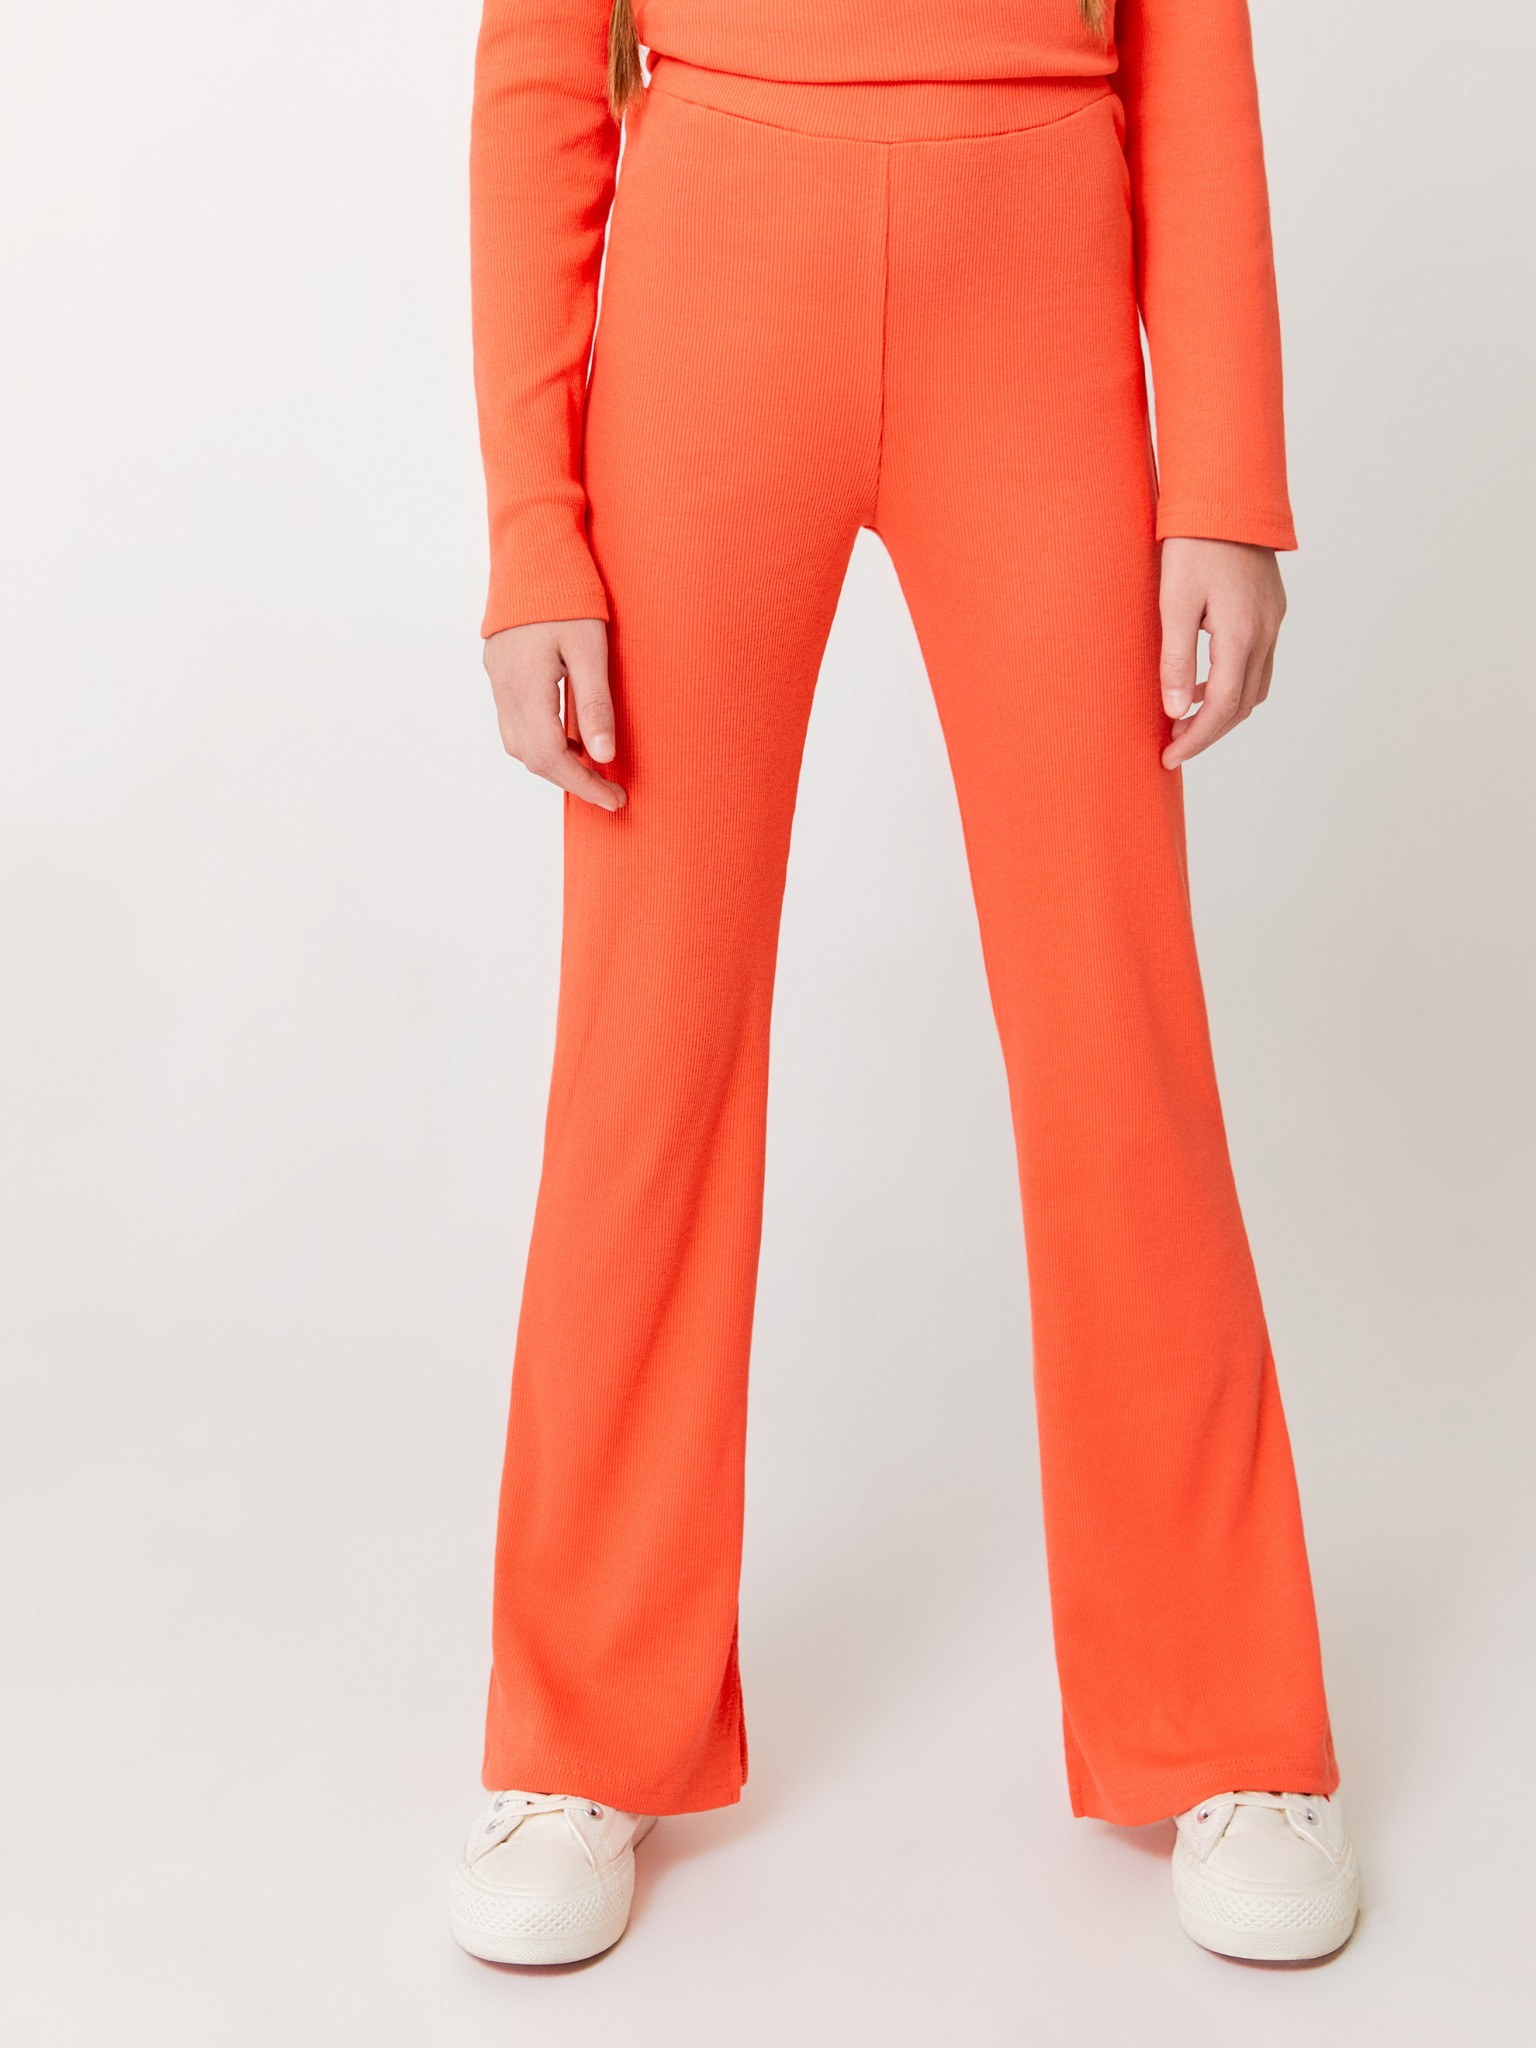 Брюки в рубчик ACOOLA 20200160011, оранжевый, 140 брюки утепленные мужские protest оранжевый